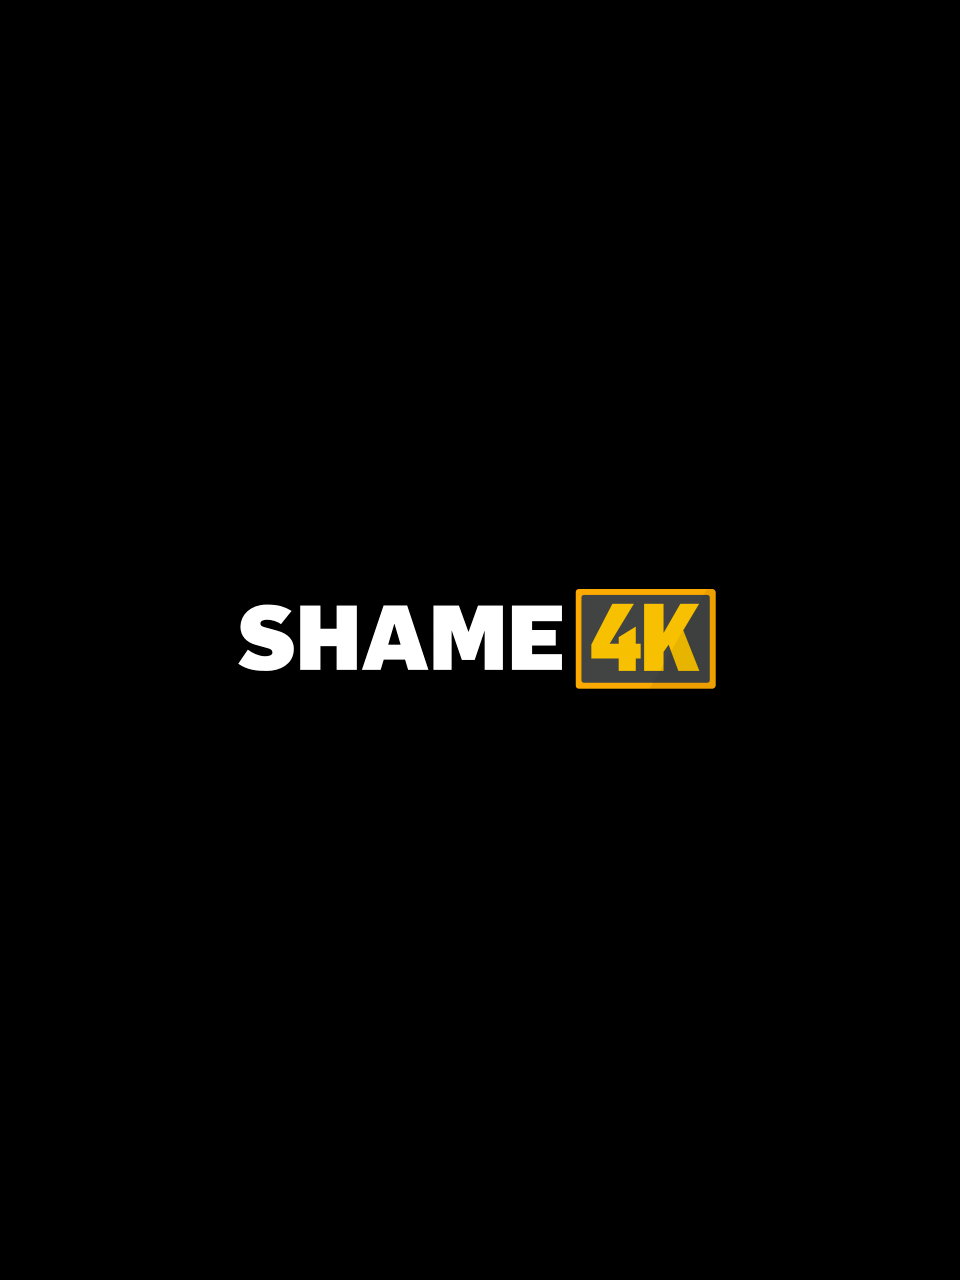 Shame4k